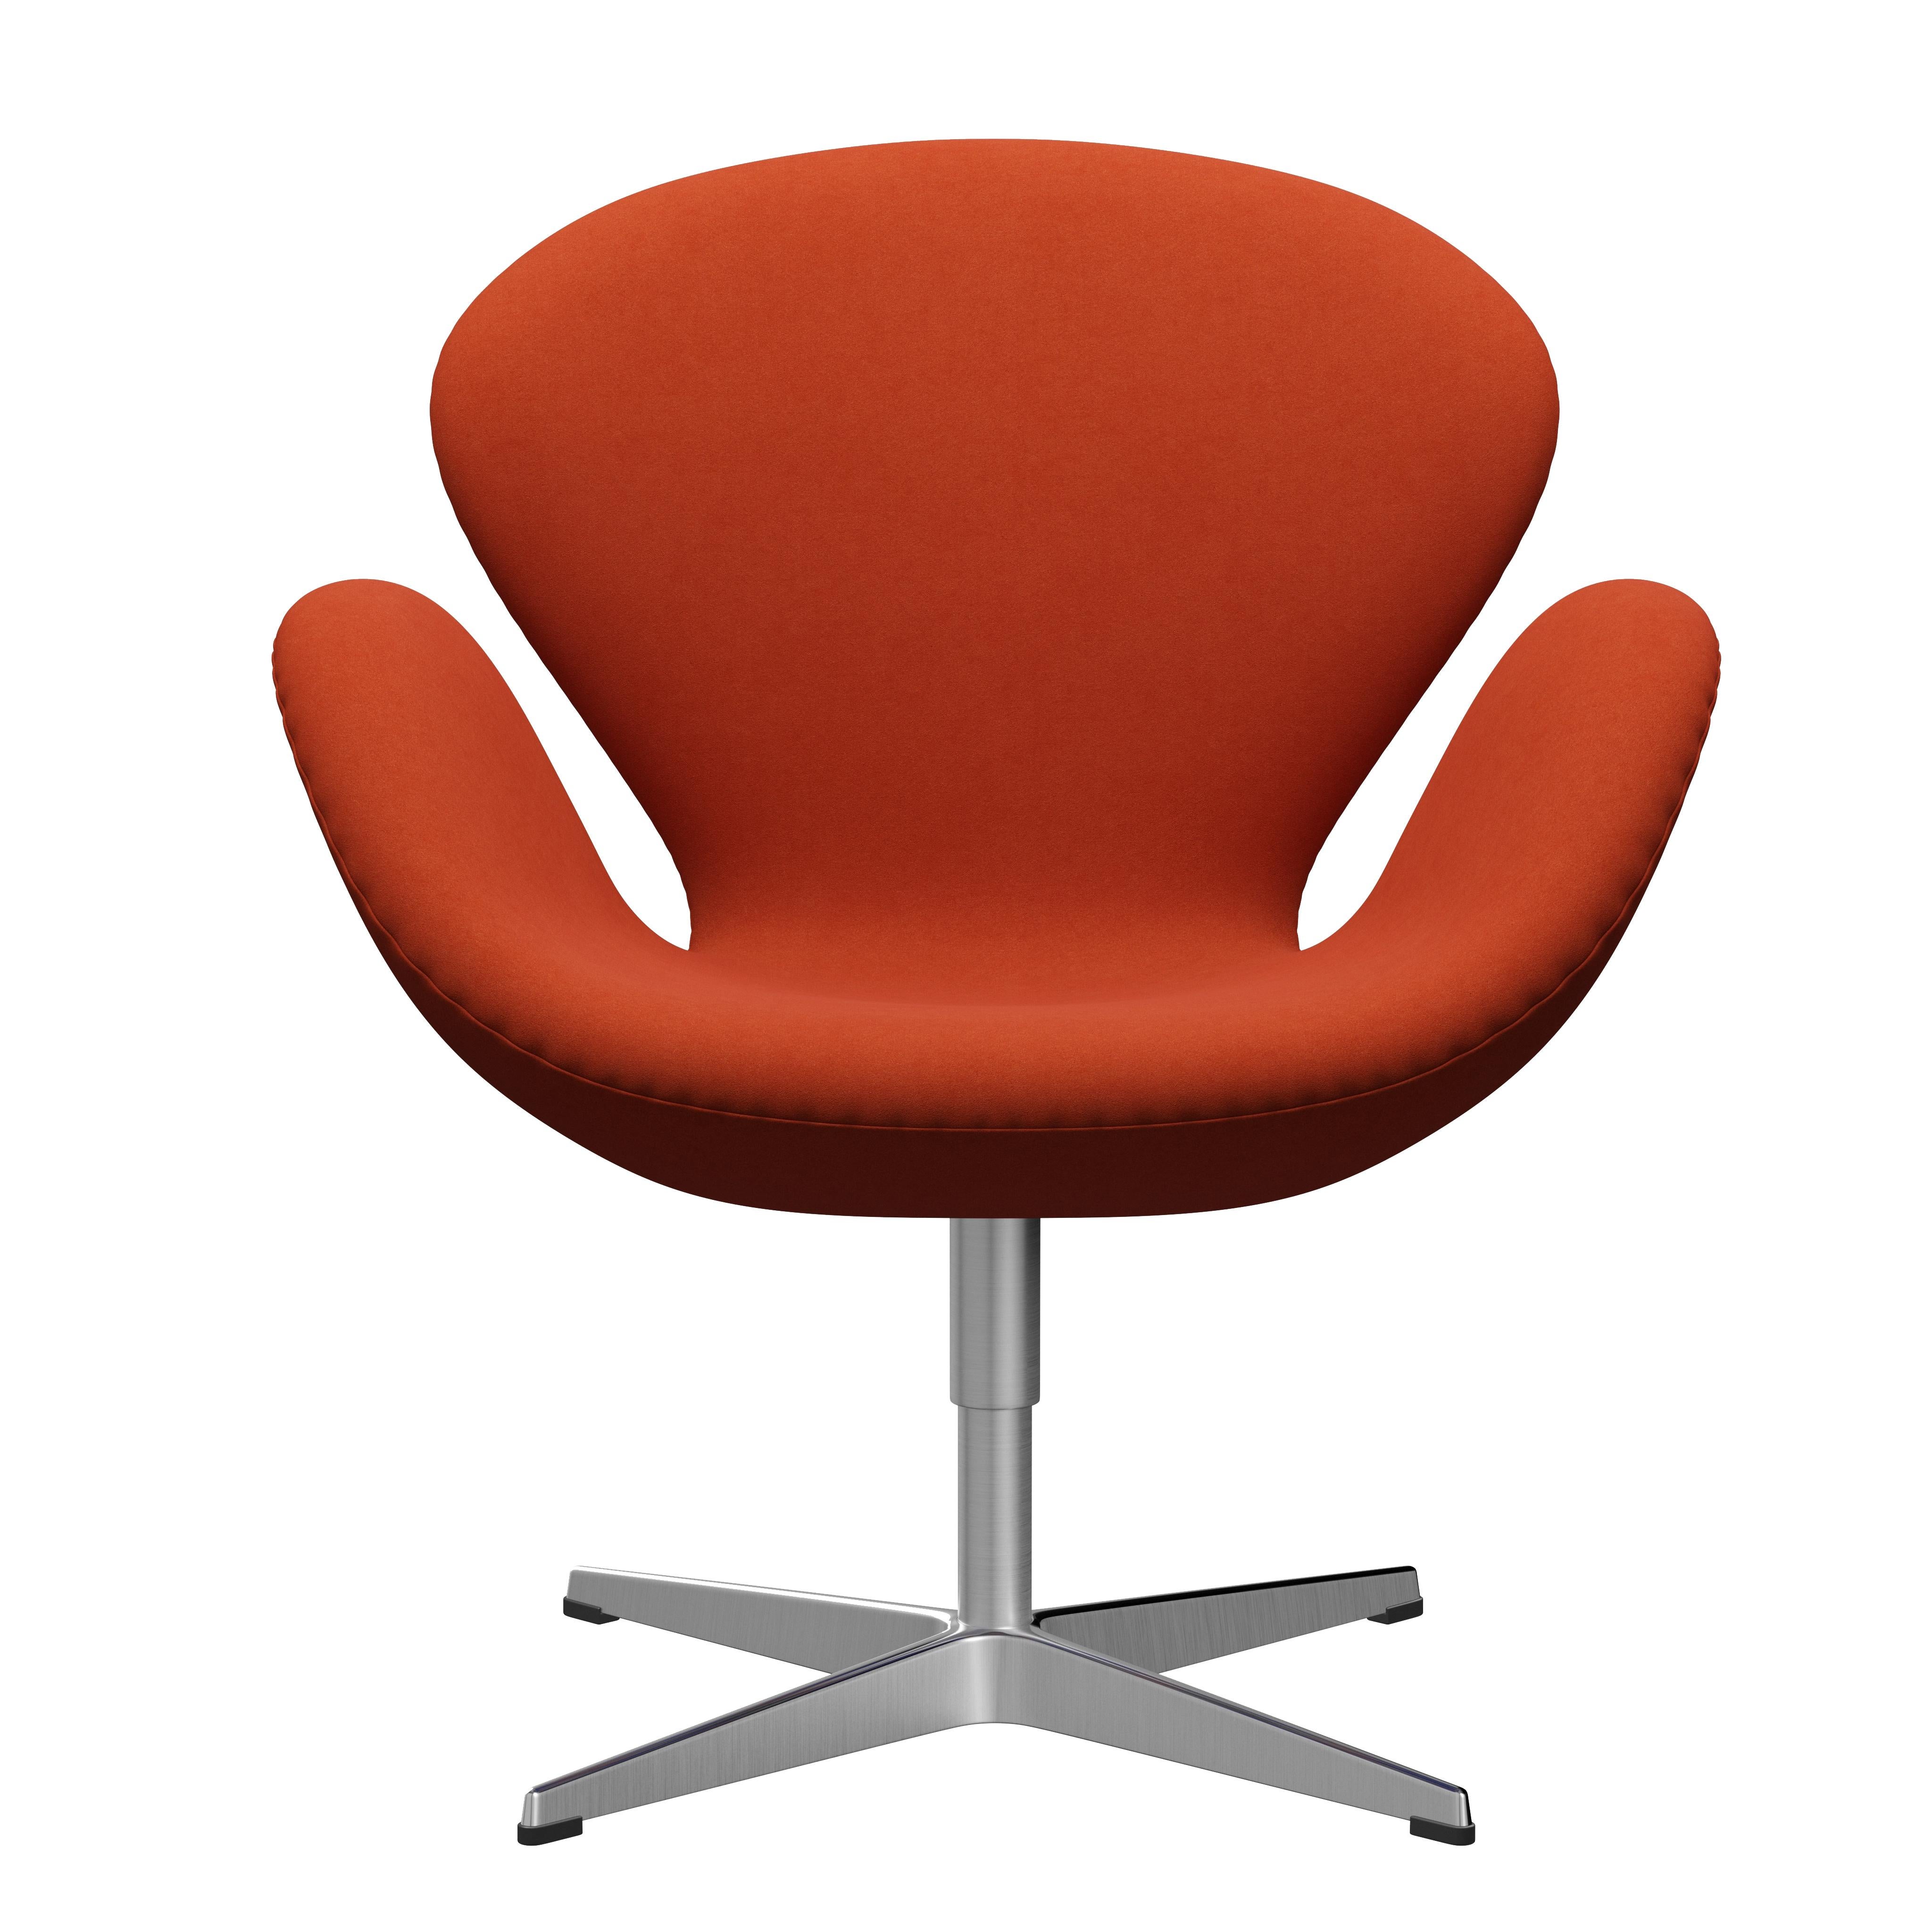 Arne Jacobsen 'Swan' Chair for Fritz Hansen in Fabric Upholstery (Cat. 3) For Sale 8